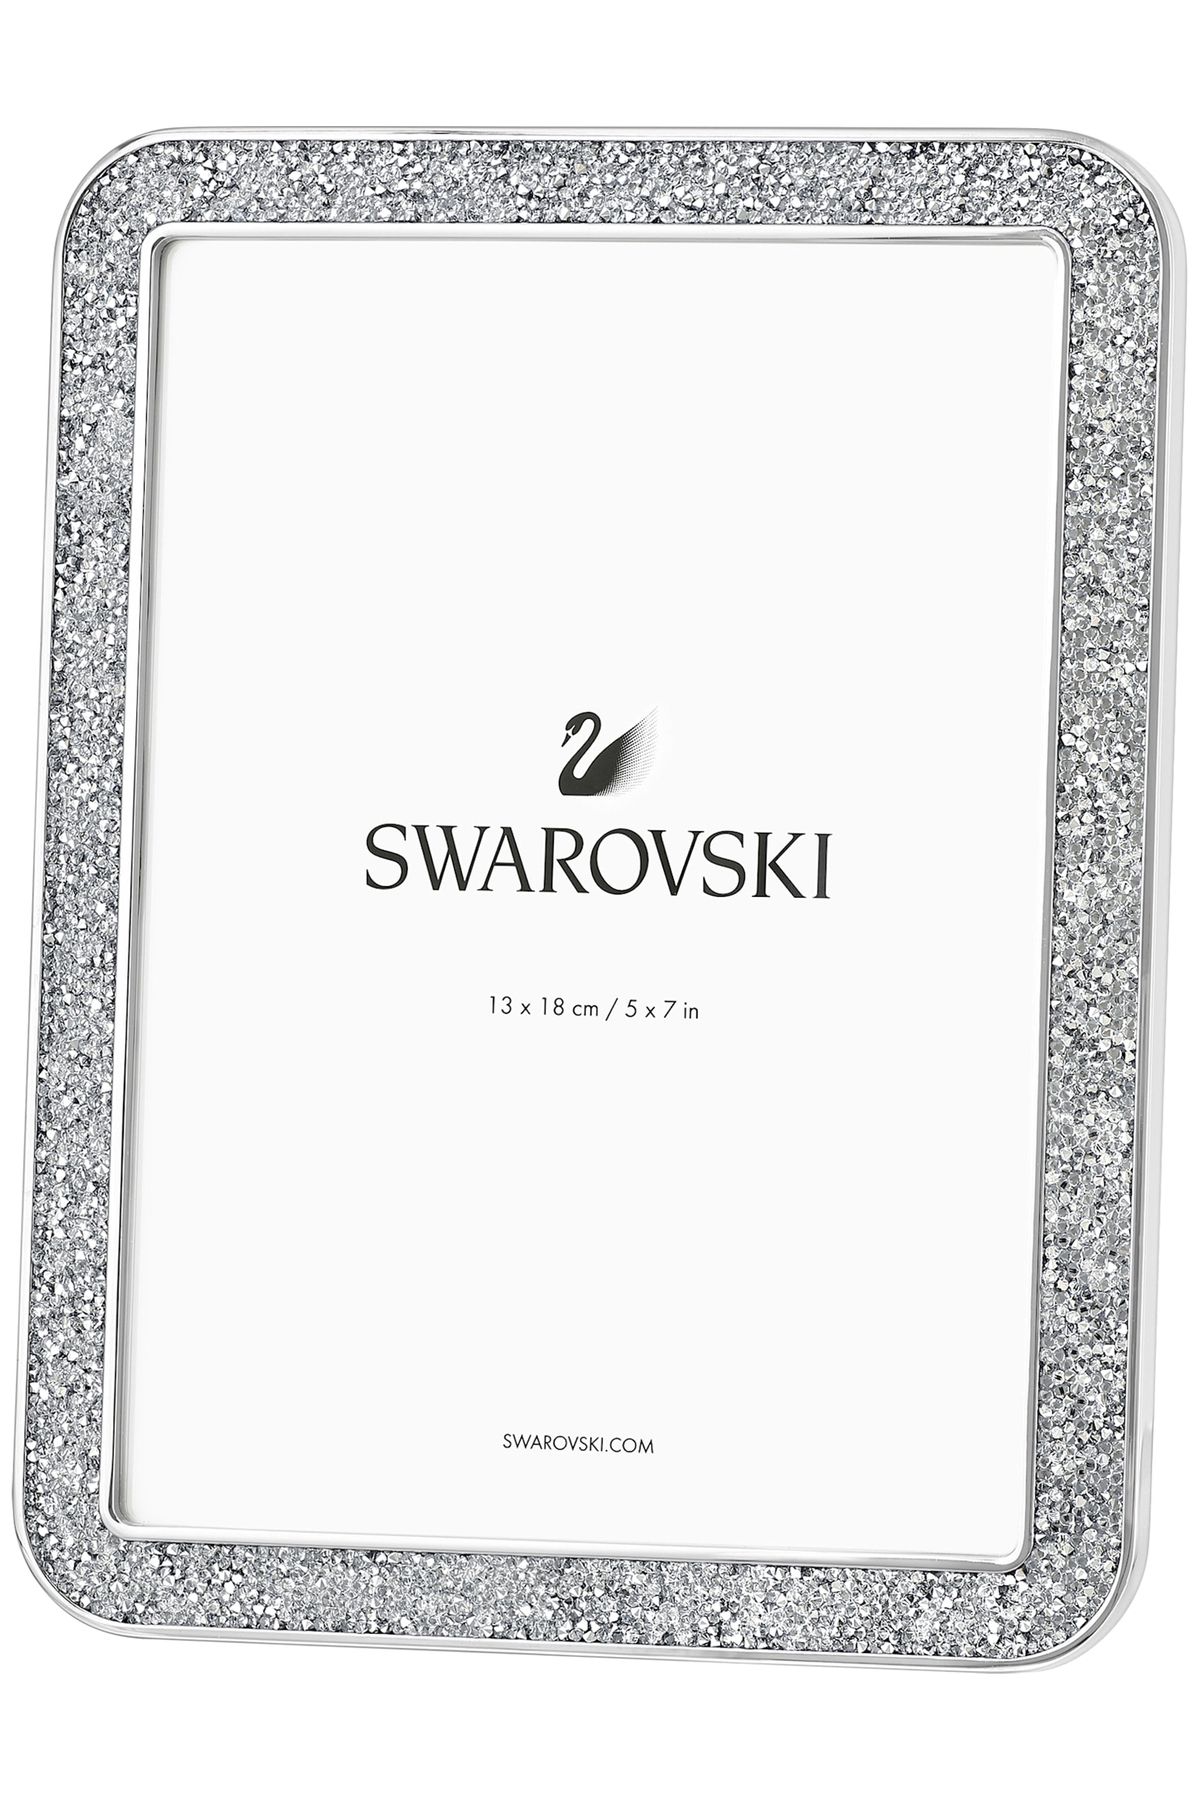 Swarovski Minera Resim Çerçevesi küçük boy, Gümüş Rengi